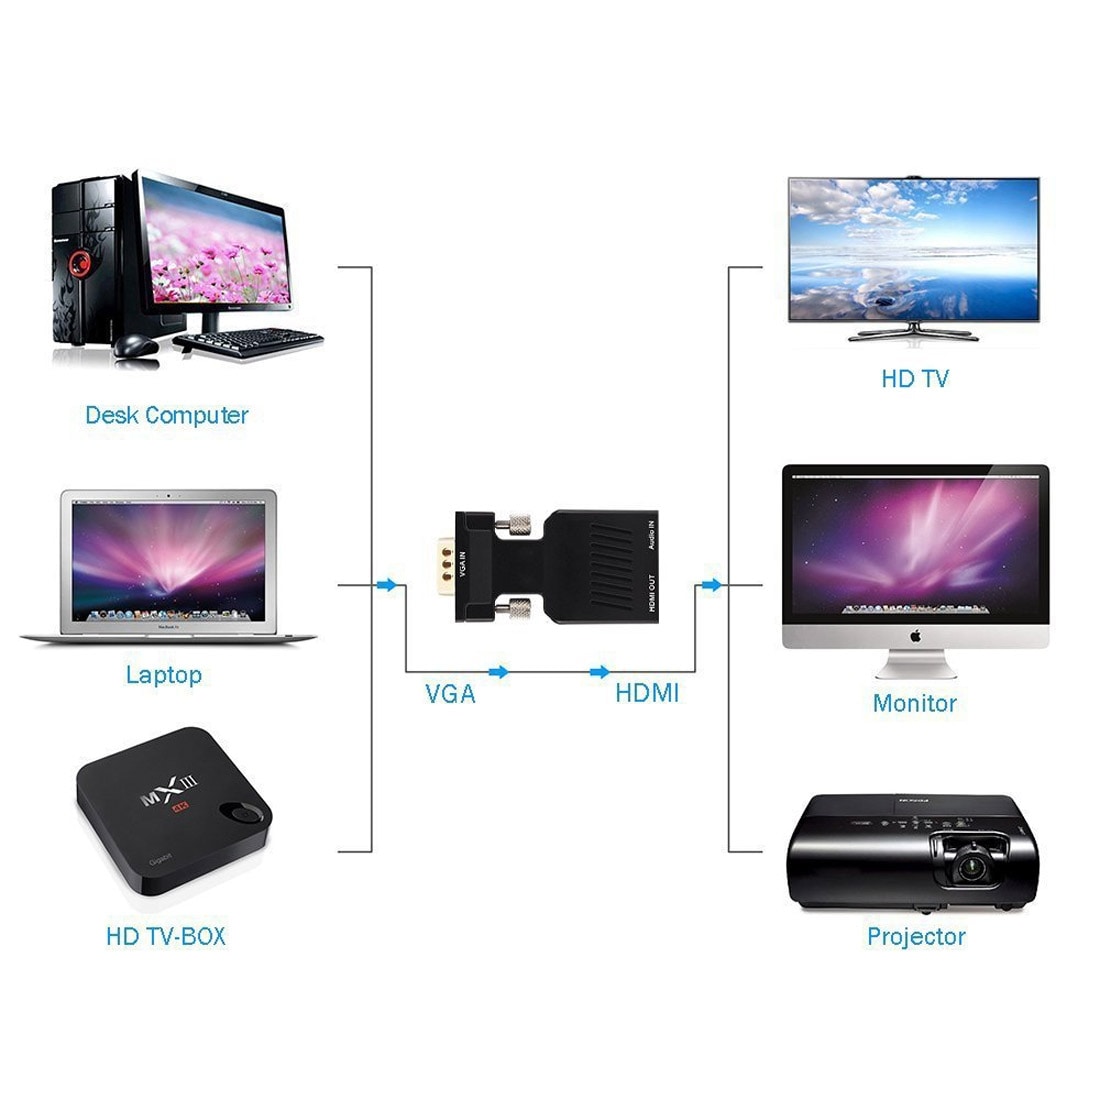 Adapteri VGA - HDMI + Audio Video lähtö HDTV Monitori